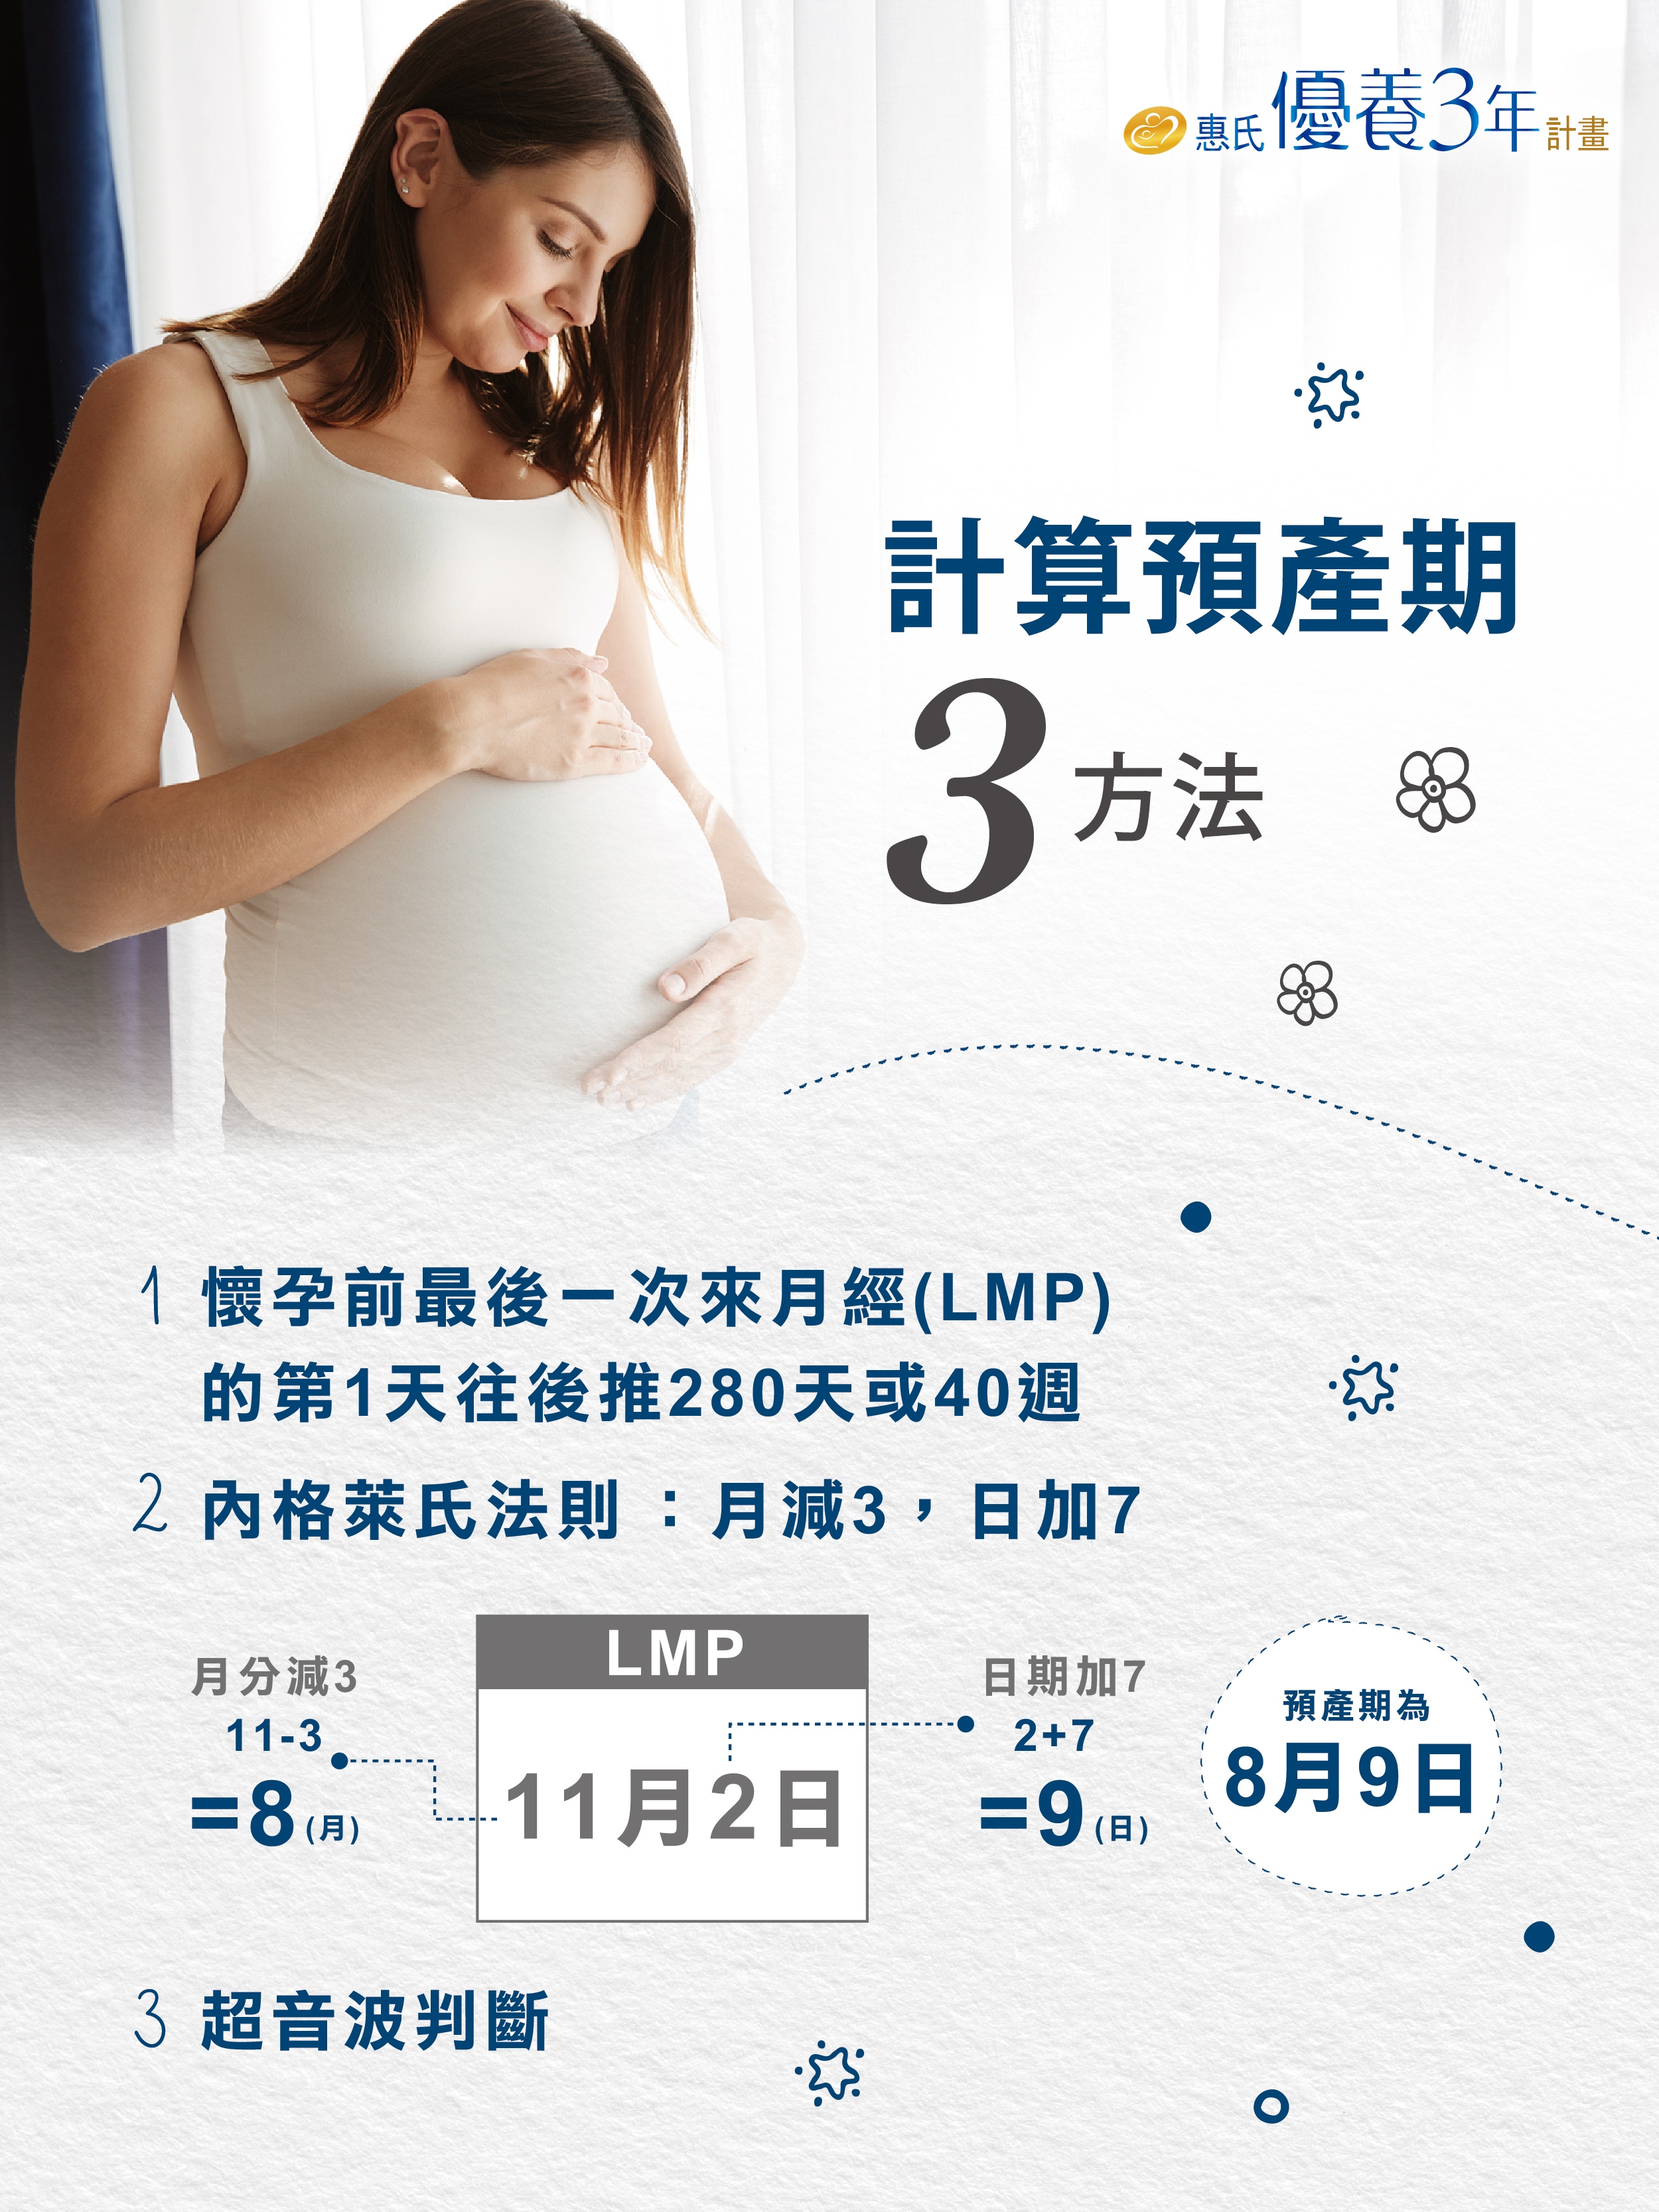 預產期這樣算 安心掌握寶寶的發育狀況 Wyeth Nutrition Taiwan